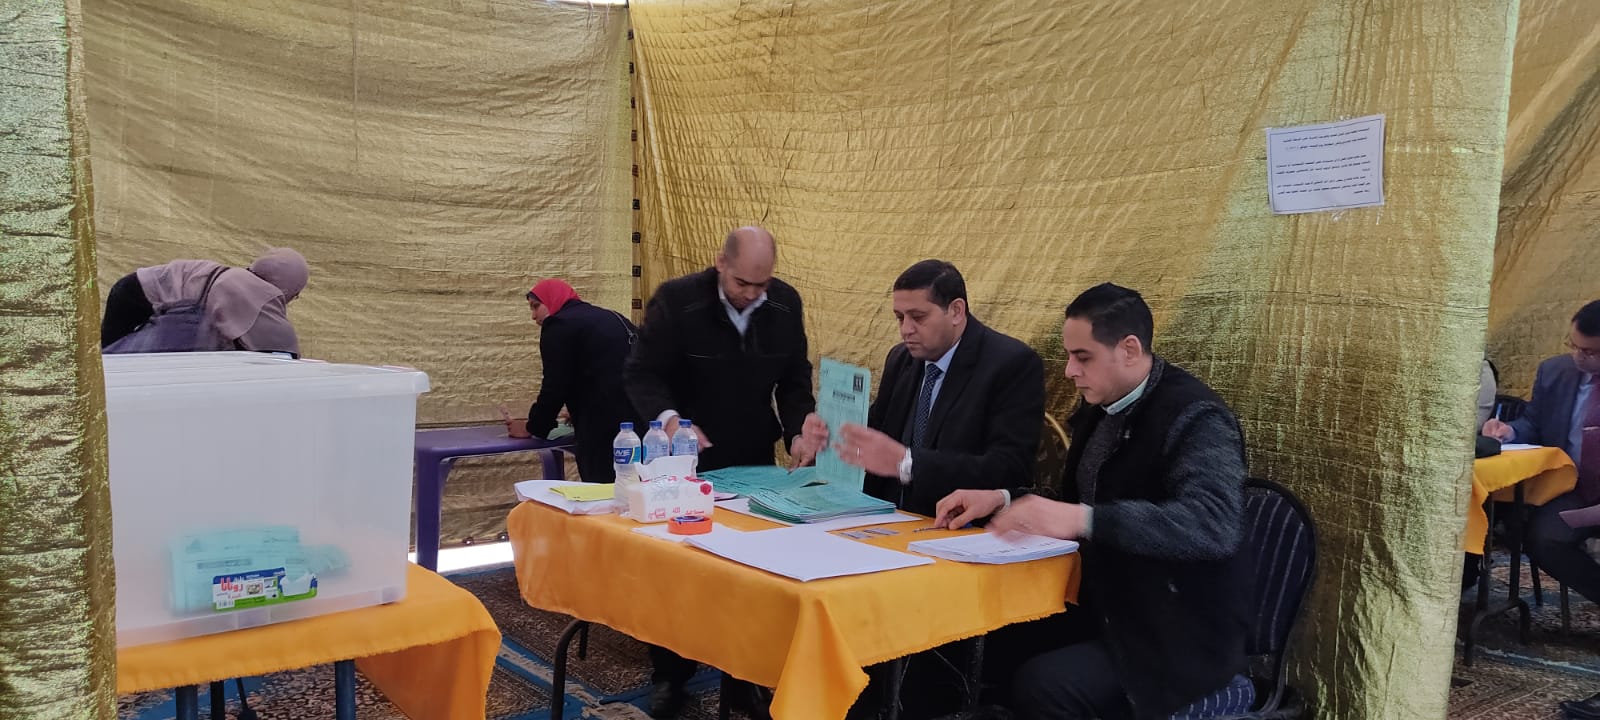 إنطلاق المرحلة الثانية من انتخابات المهندسين بالإسكندرية